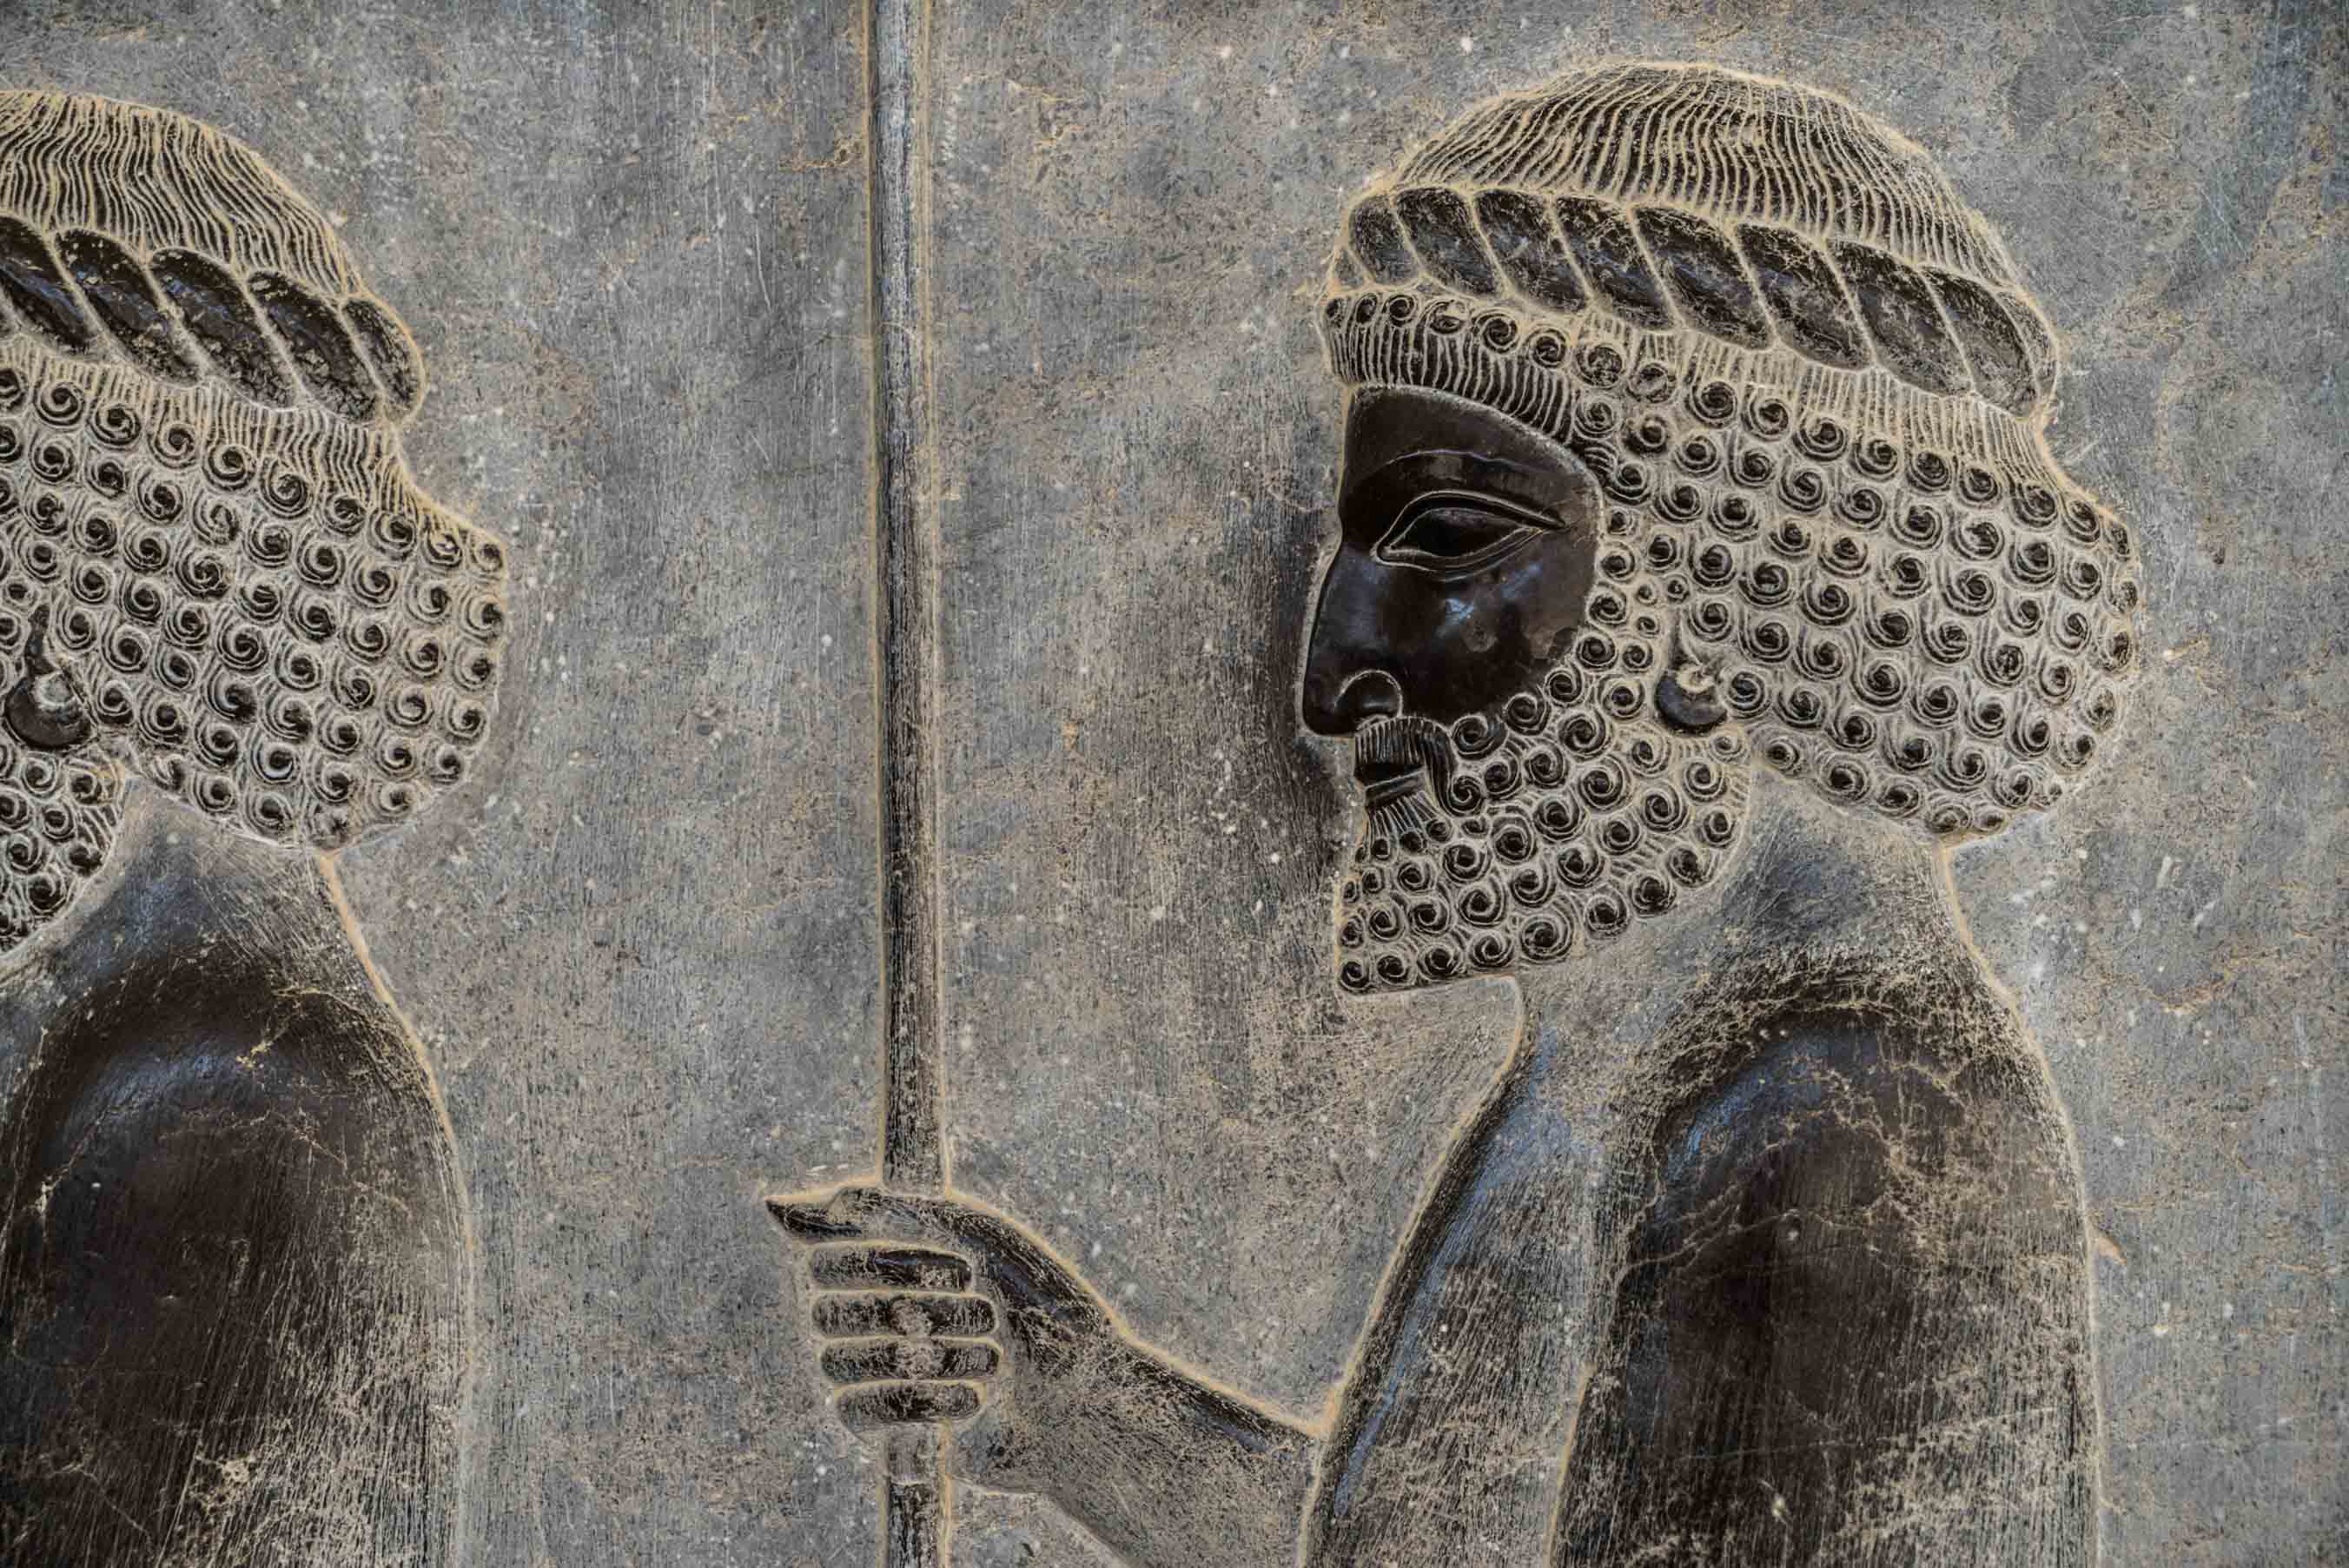 Persepolis Iran - Immortals warrior